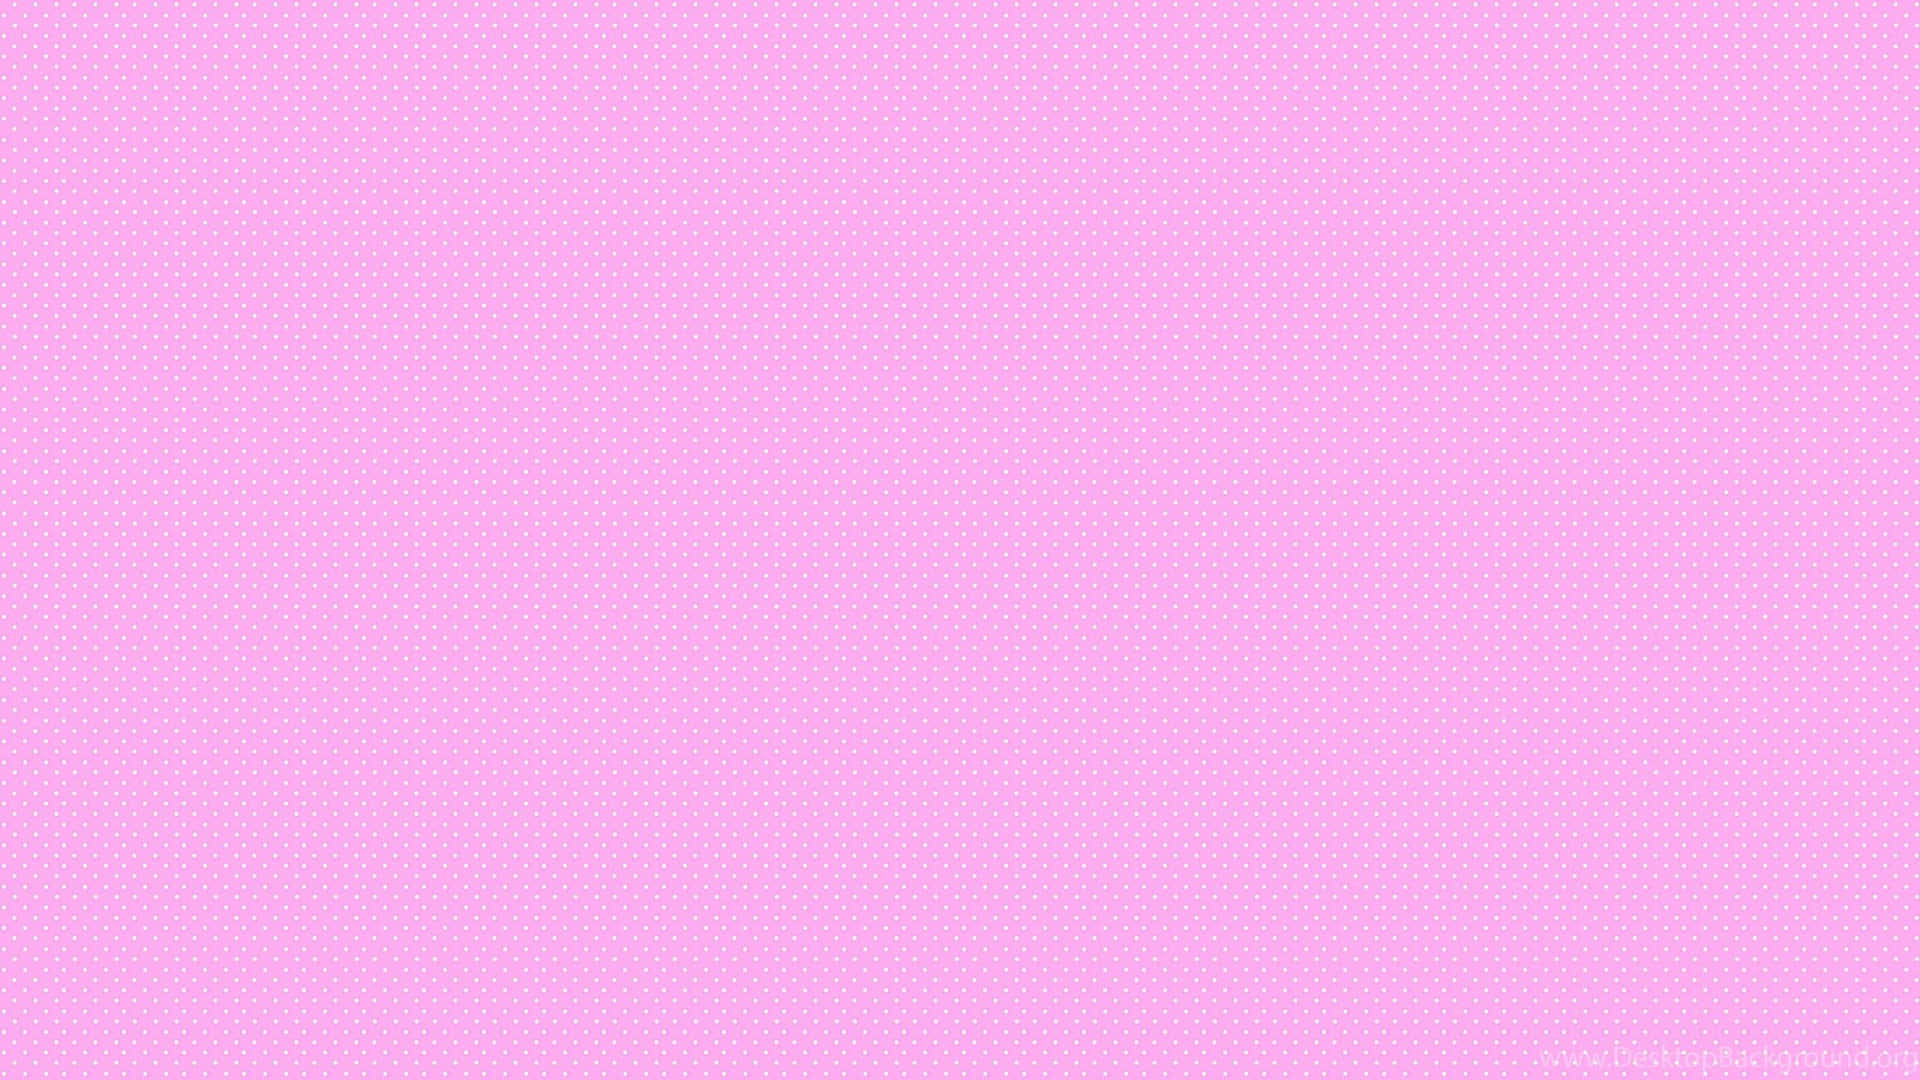 Einruhiger Hintergrund Mit Einem Sanften Rosa Farbverlauf. Wallpaper